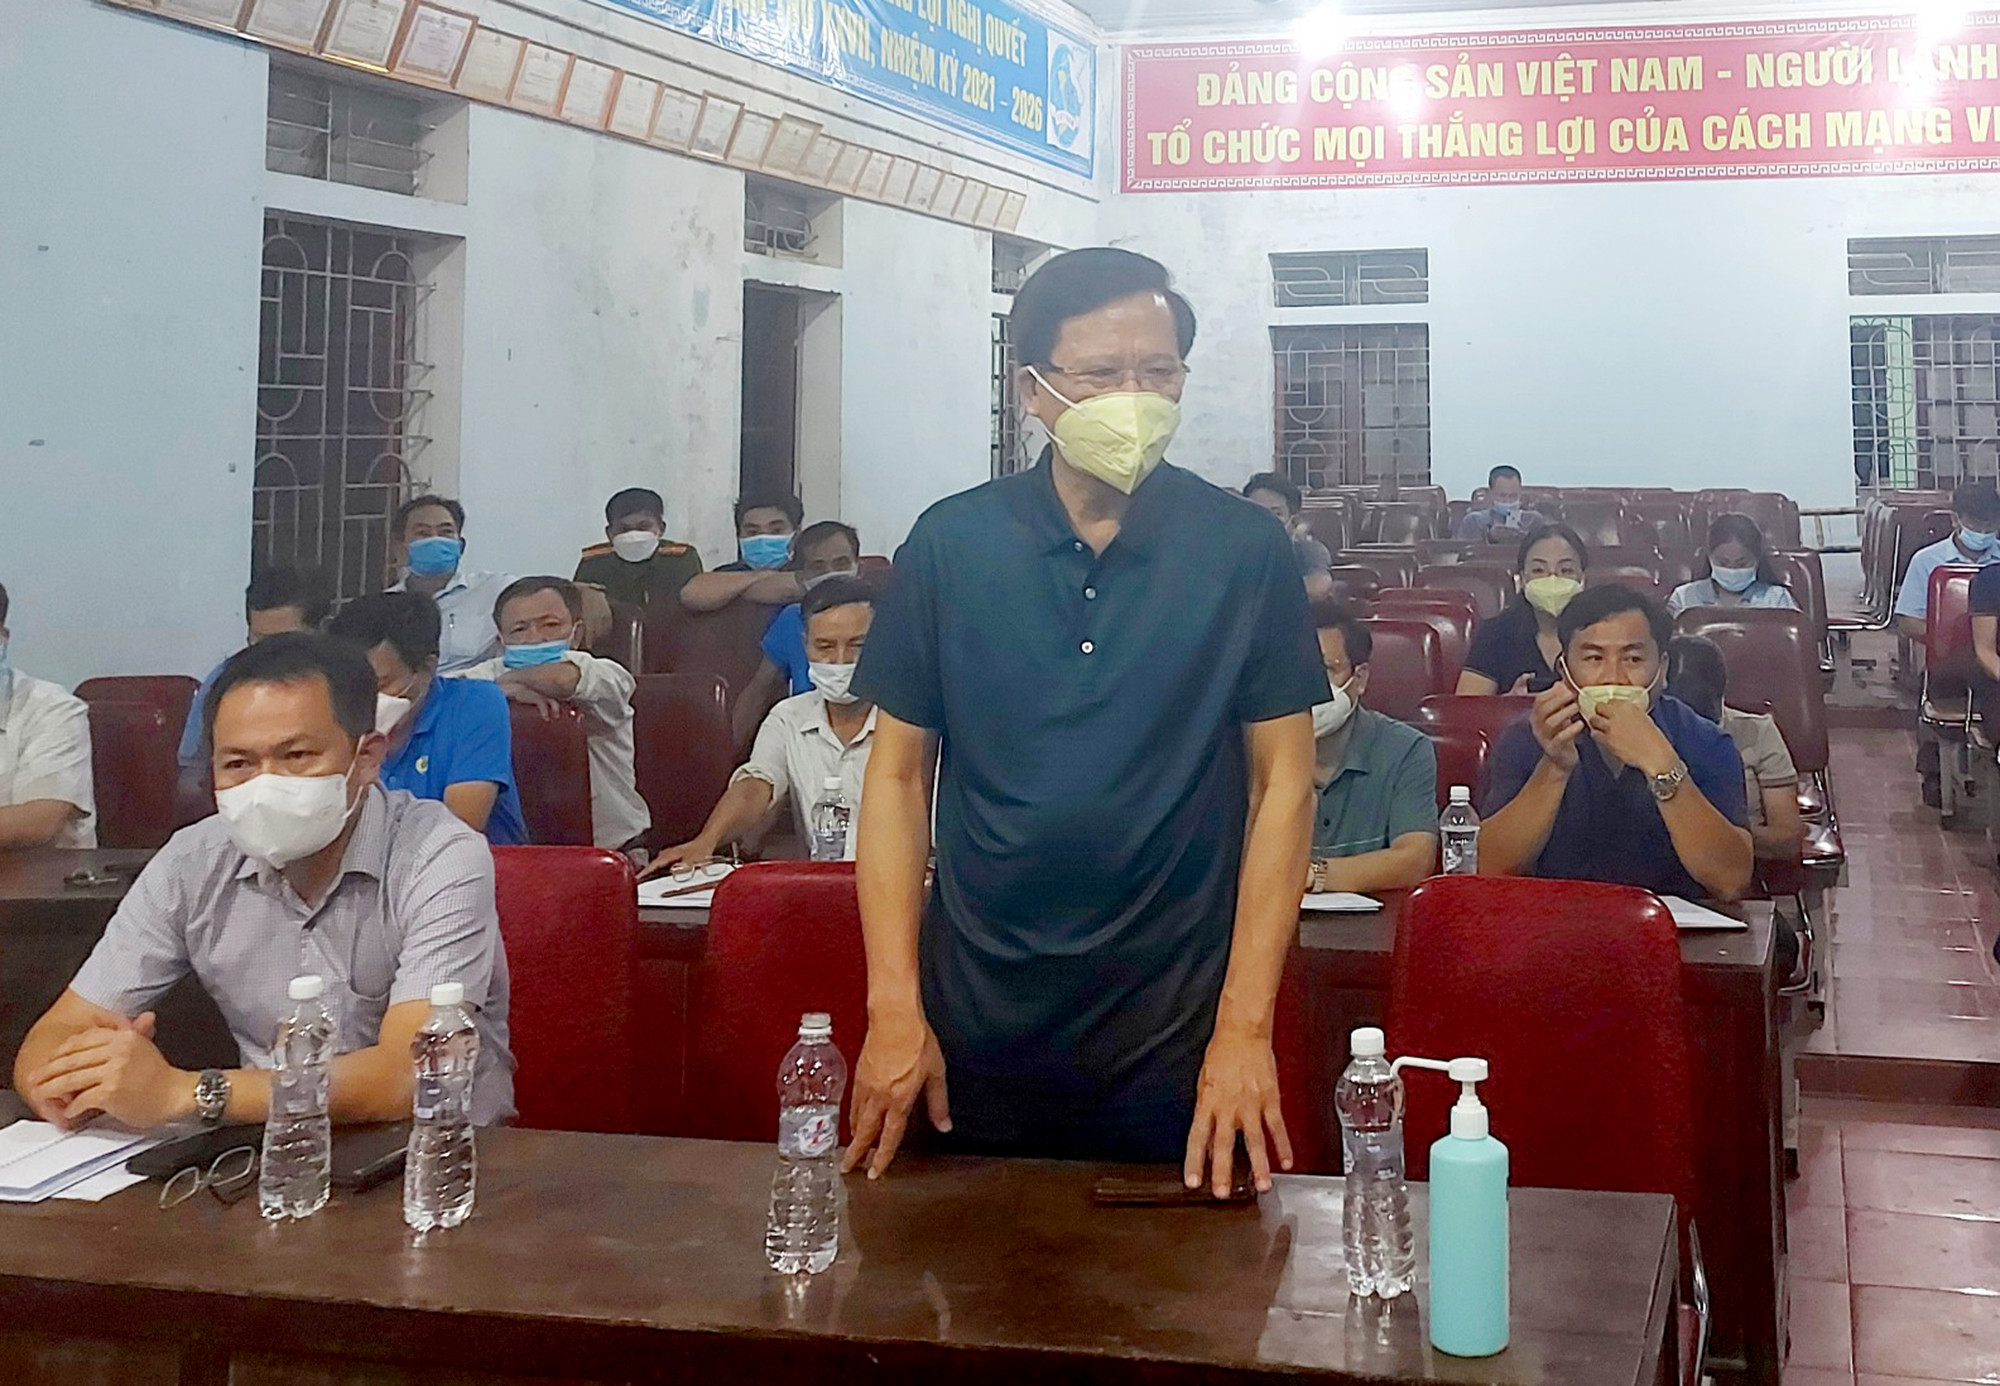 Lãnh đạo huyện Yên Thành báo cáo về ca bệnh cộng đồng tại xã Nhân Thành. Ảnh: Thành Chung